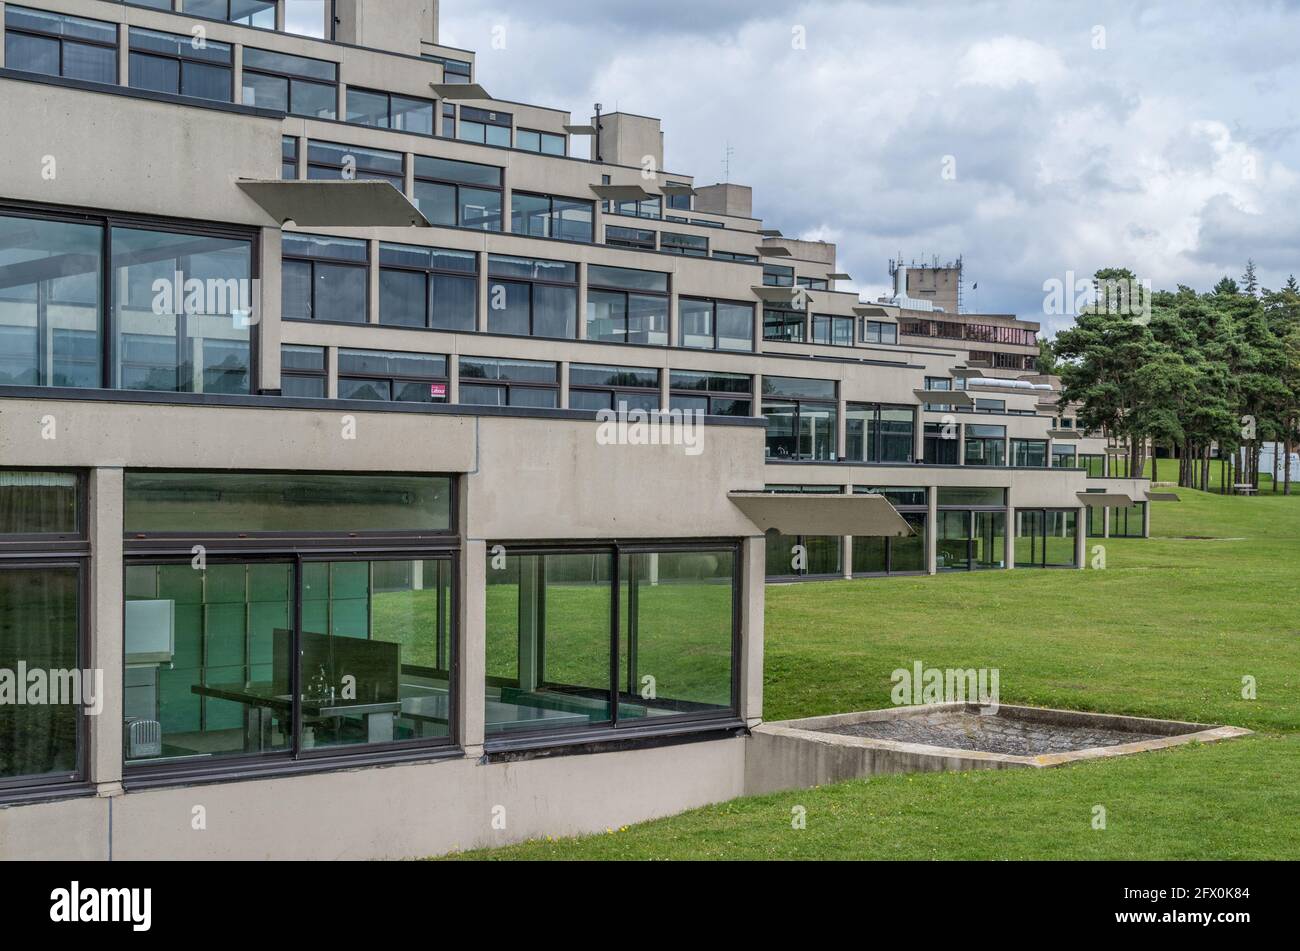 Studentenunterkunft, bekannt als Ziggurats, auf dem Campus der University of East Anglia, Norwich, Großbritannien; brutalistisches Design der 1960er Jahre von Denys Lasdun Stockfoto